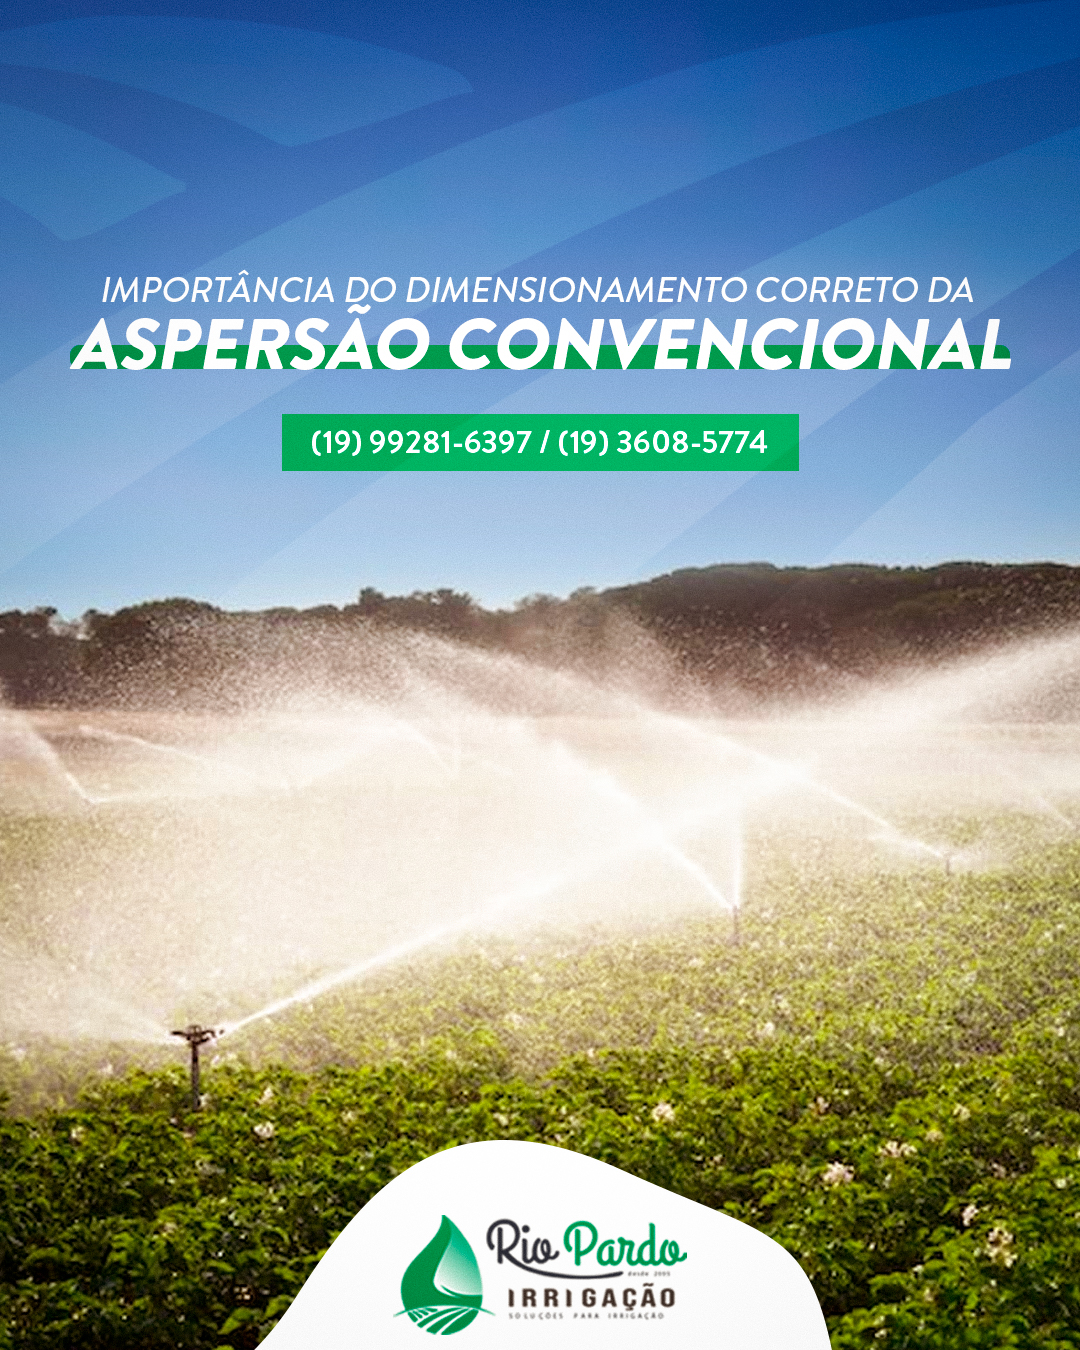 IRRIGAÇÃO RIO PARDO - 3-IMPORTÂNCIA DO DIMENSIONAMENTO CORRETO DA ASPERSÃO CONVENCIONAL